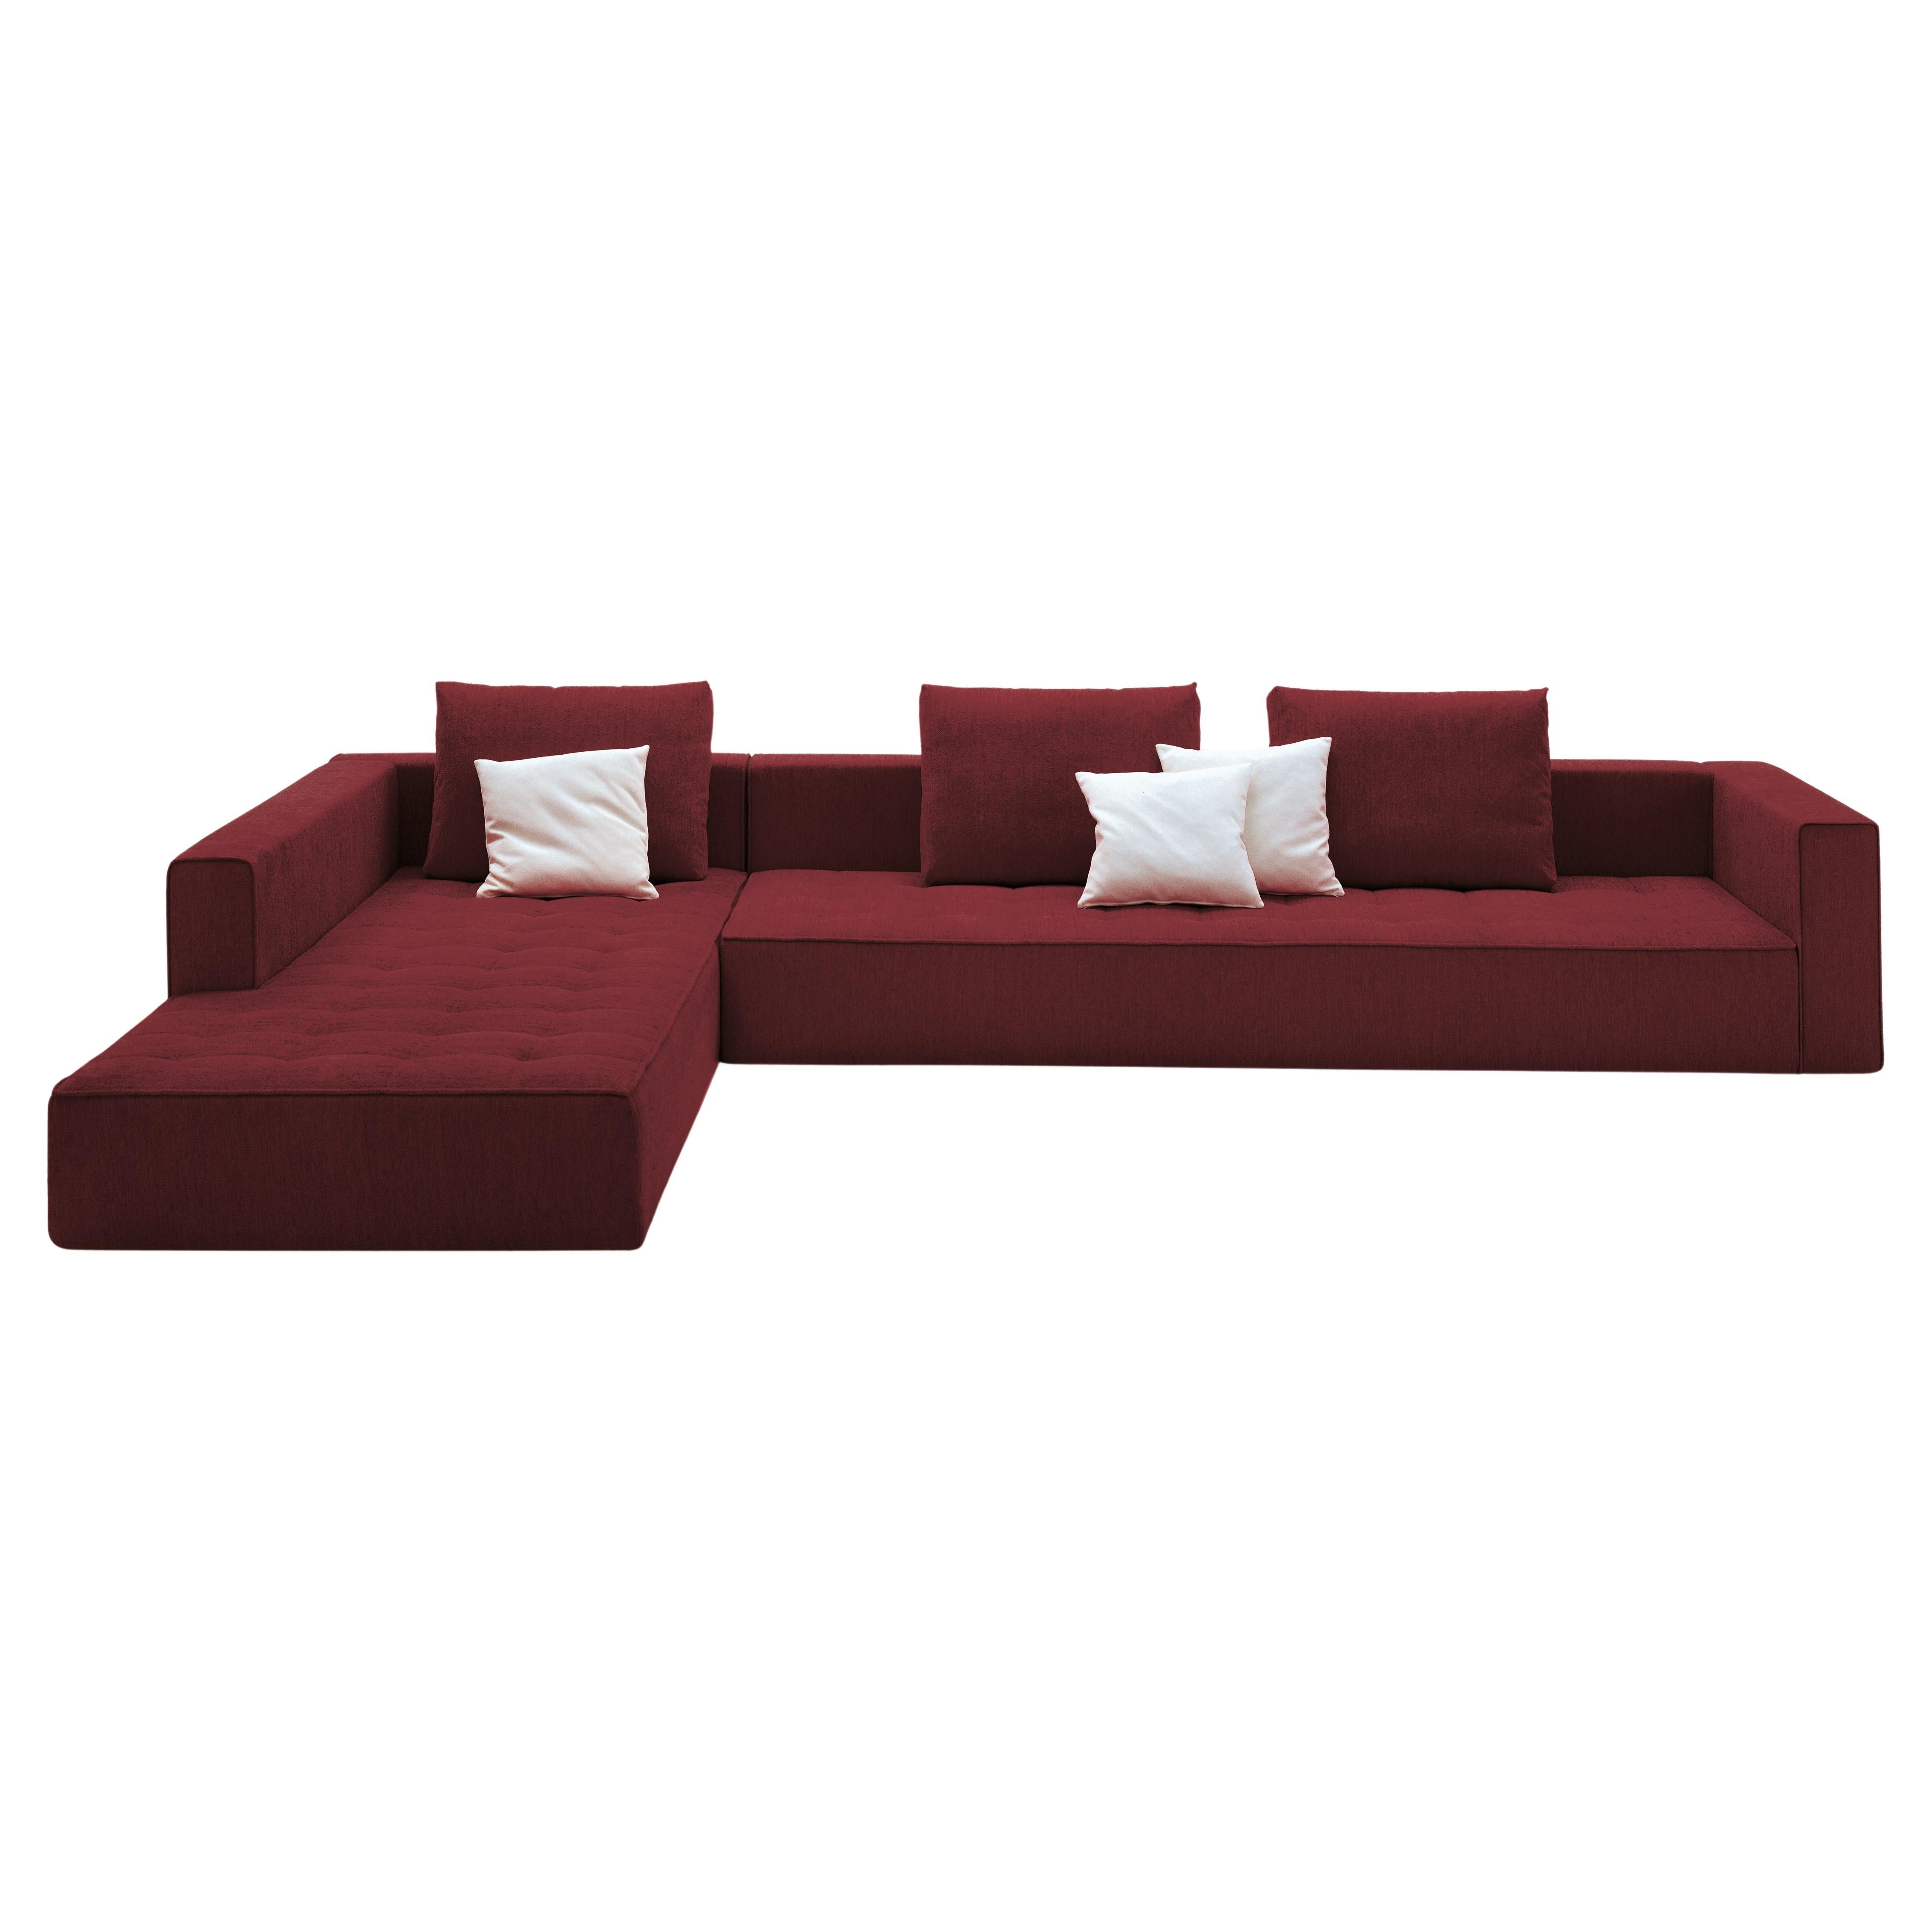 Zanotta Kilt Modular Sofa in Quadrifoglio Fabric by Emaf Progetti For Sale